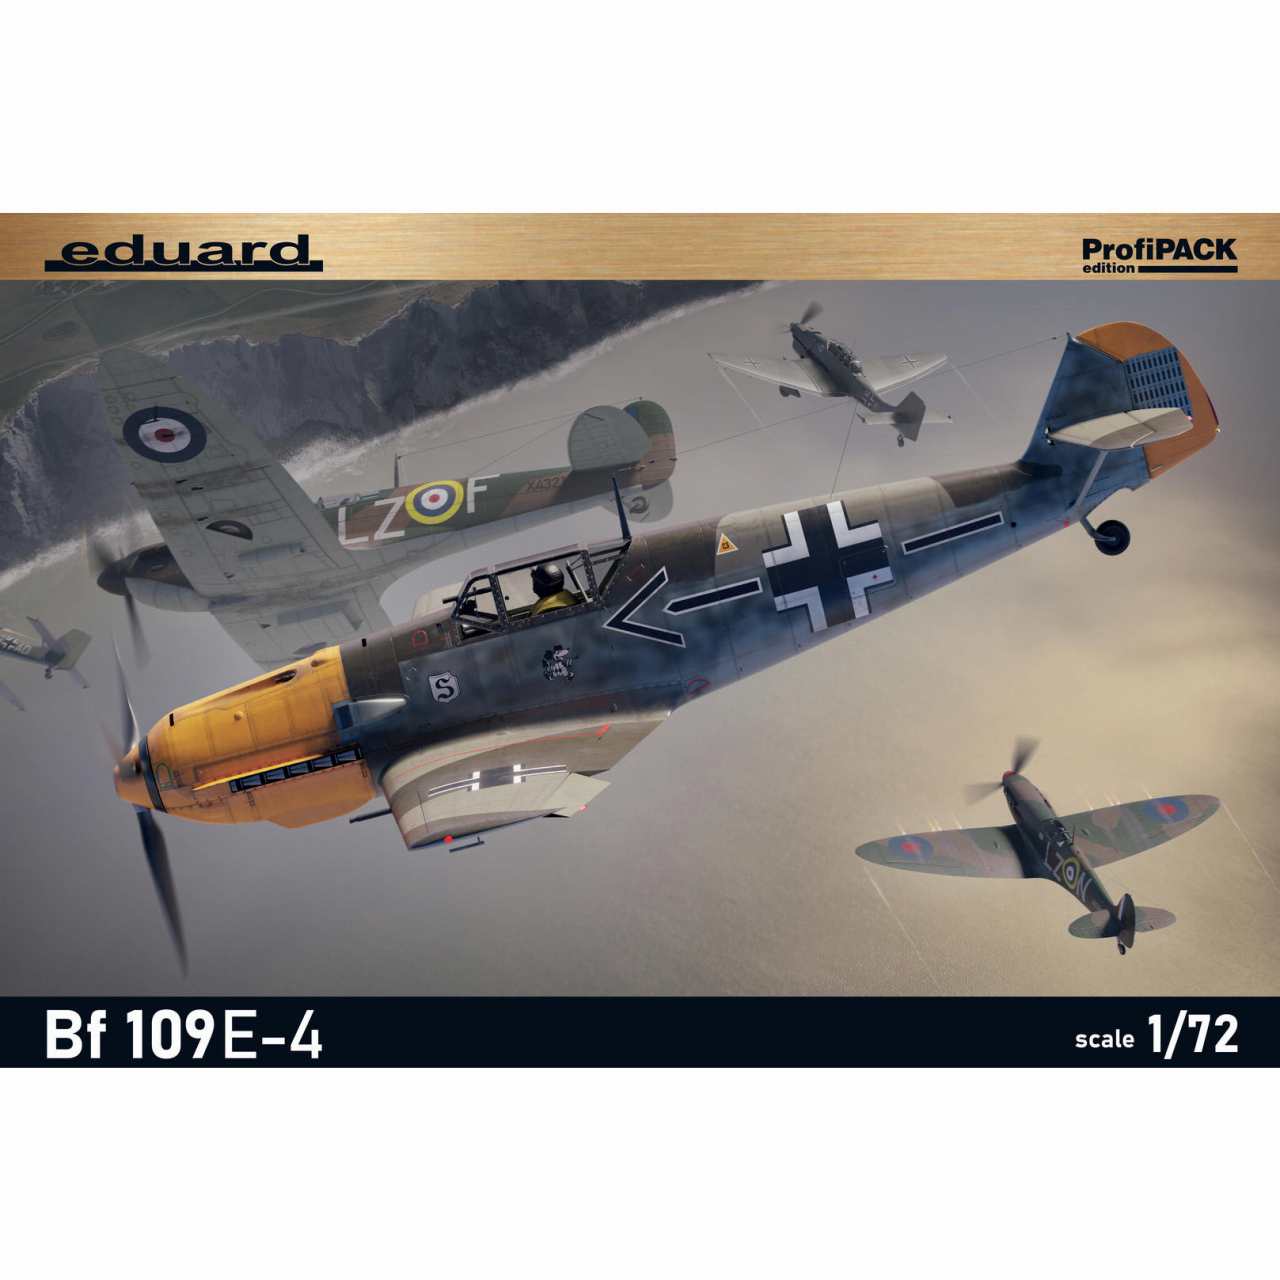 【新製品】7033 1/72 メッサーシュミット Bf109E-4 プロフィパック